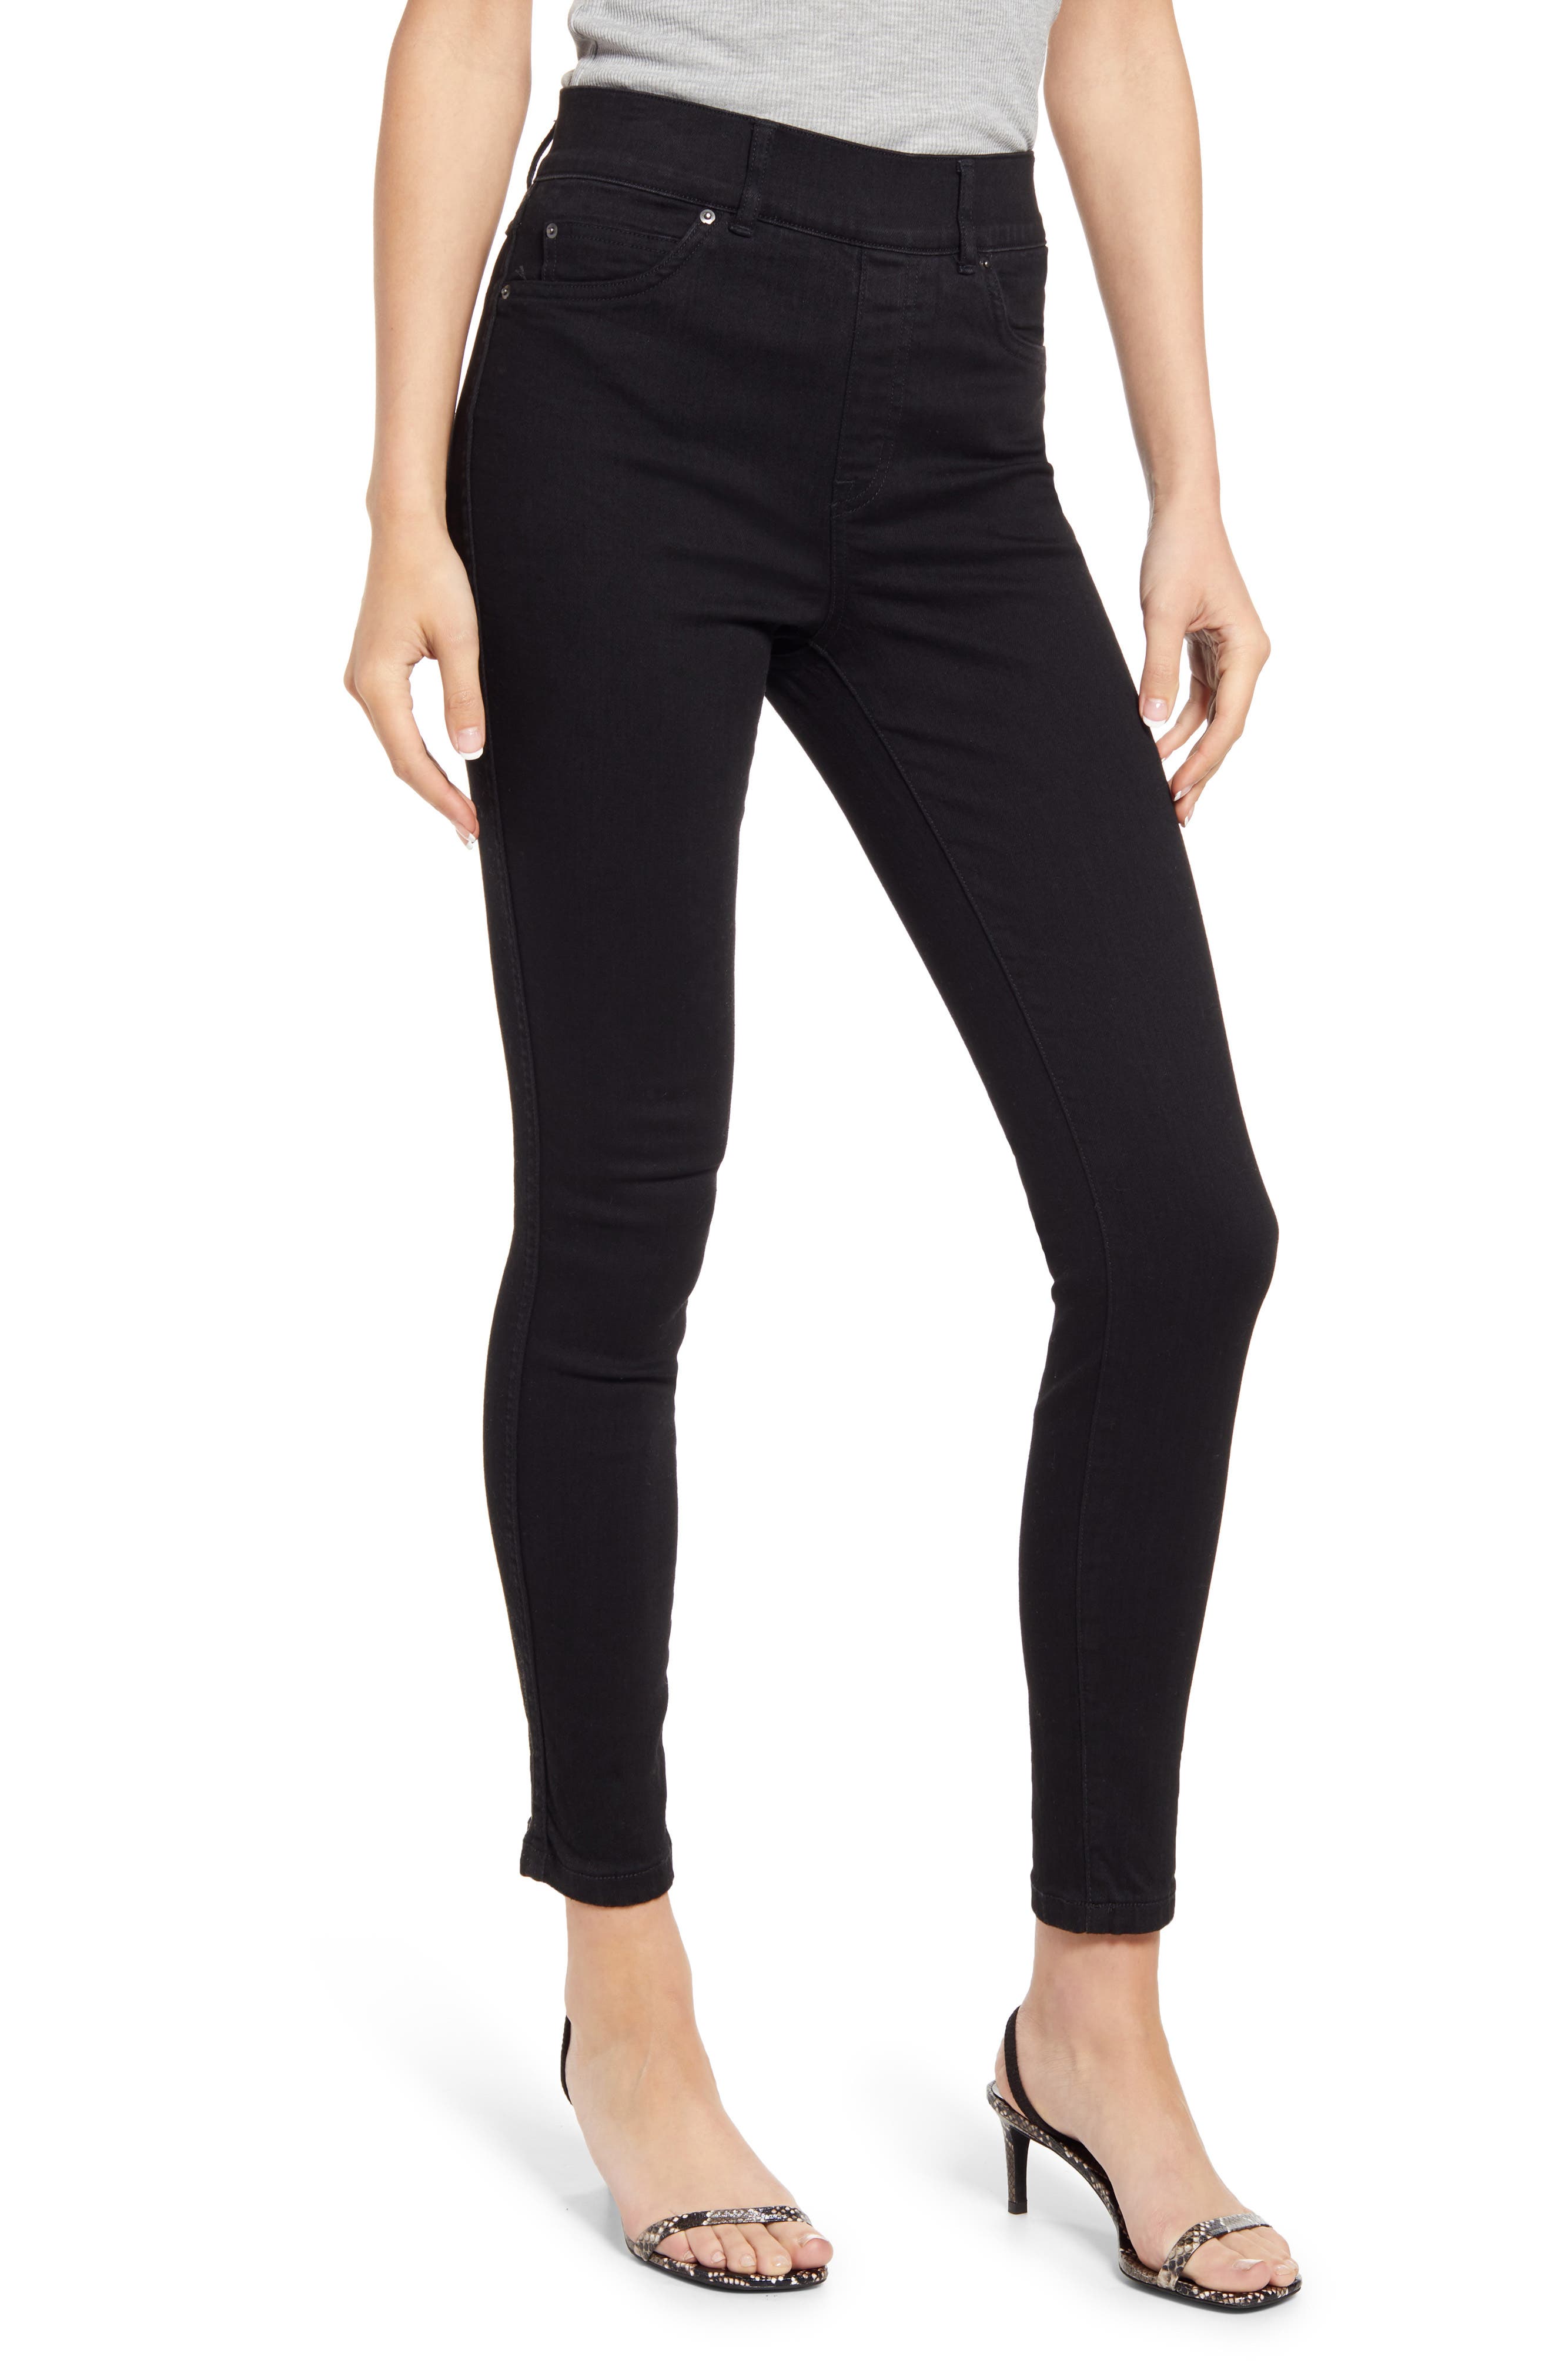 UPC 843953372851 - Plus Size Women's Spanx Ankle Skinny Jeans, Size 3 X ...